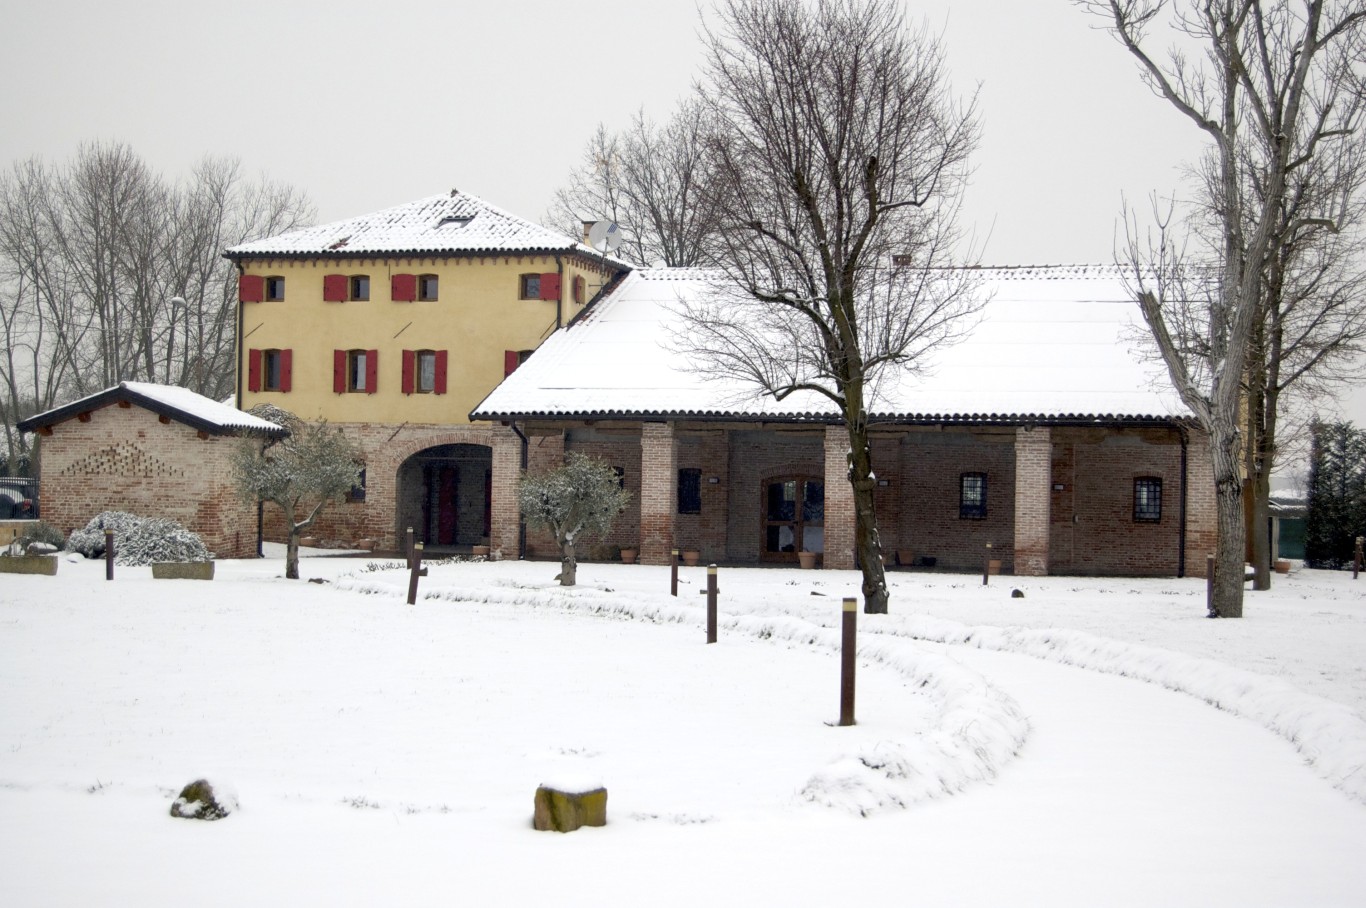 Location Eventi Invernali Veneto4